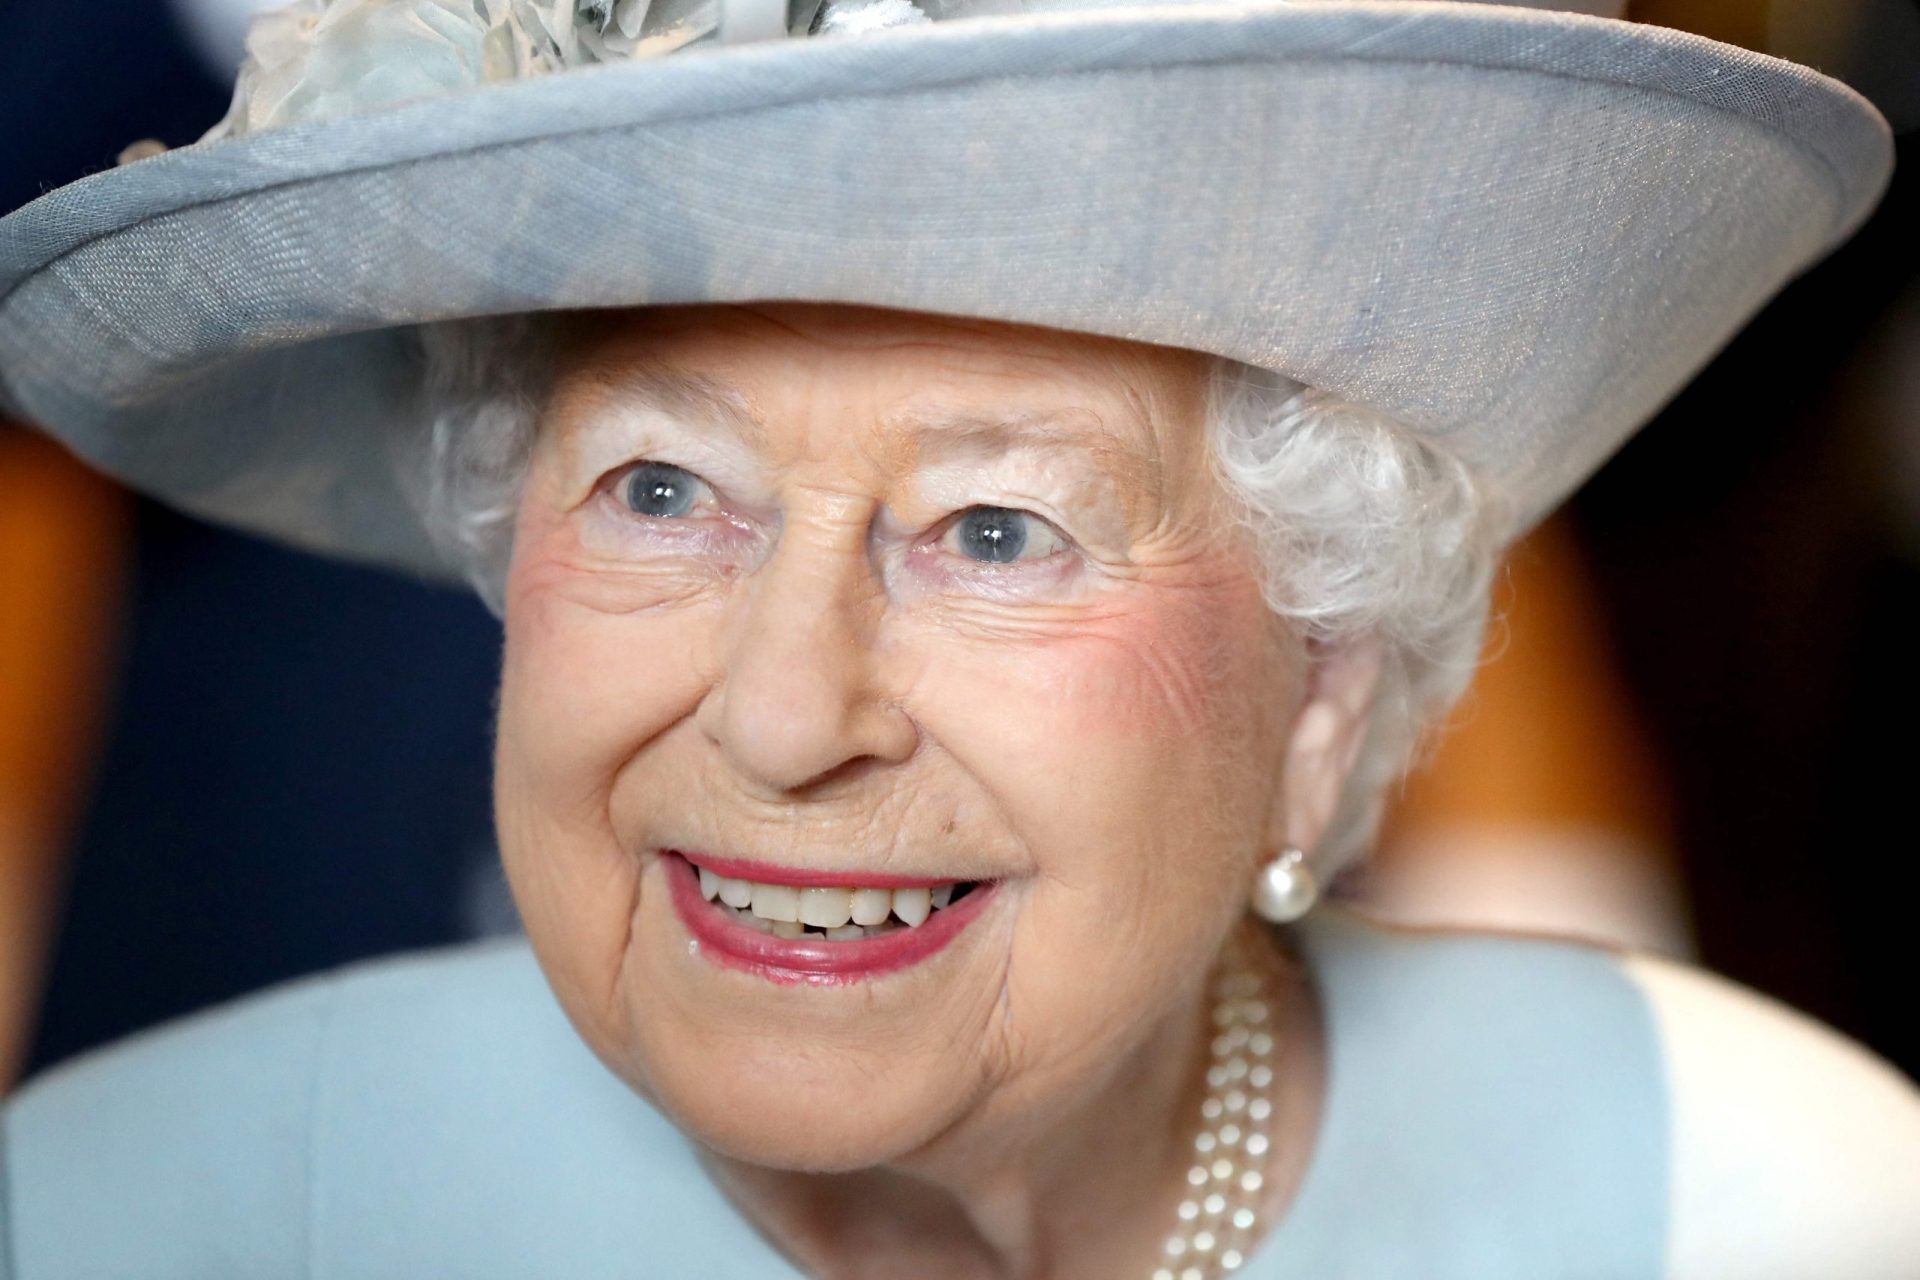 Rainha Isabel II celebra 95 anos e agradece “todo o apoio” após a morte do príncipe Filipe